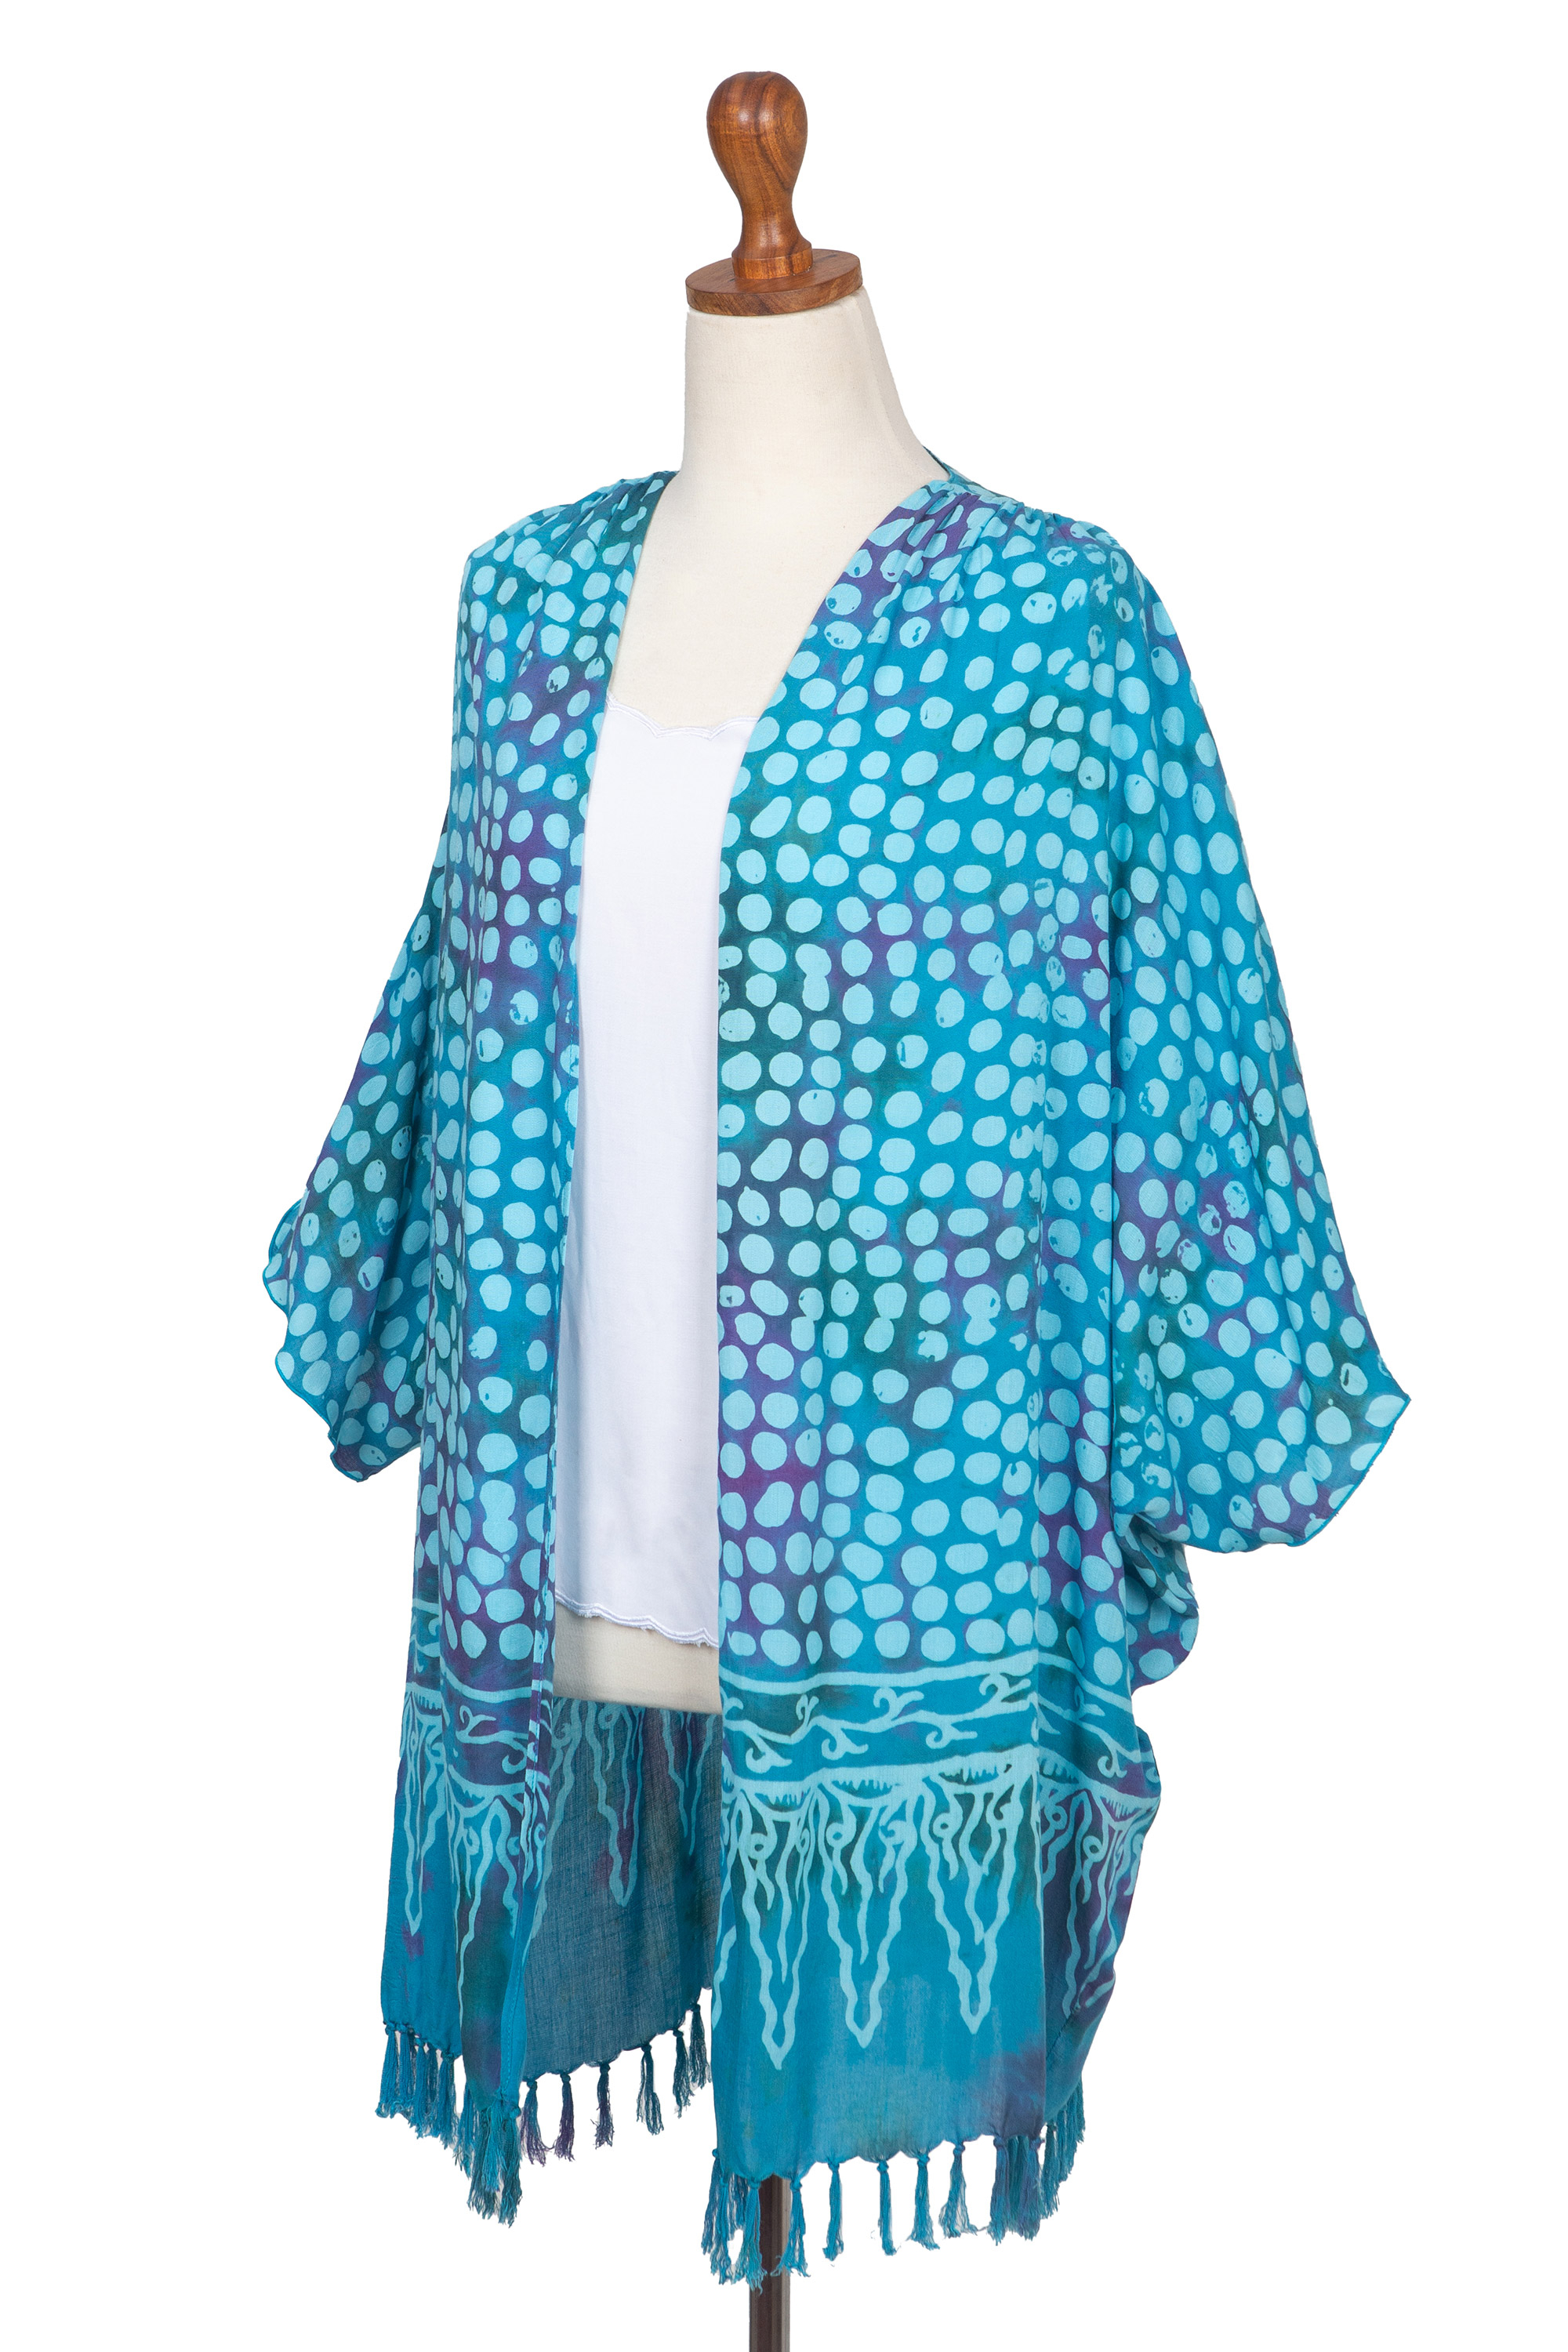 Blue Batik Rayon Kimono Topper for Women - Bubbles | NOVICA